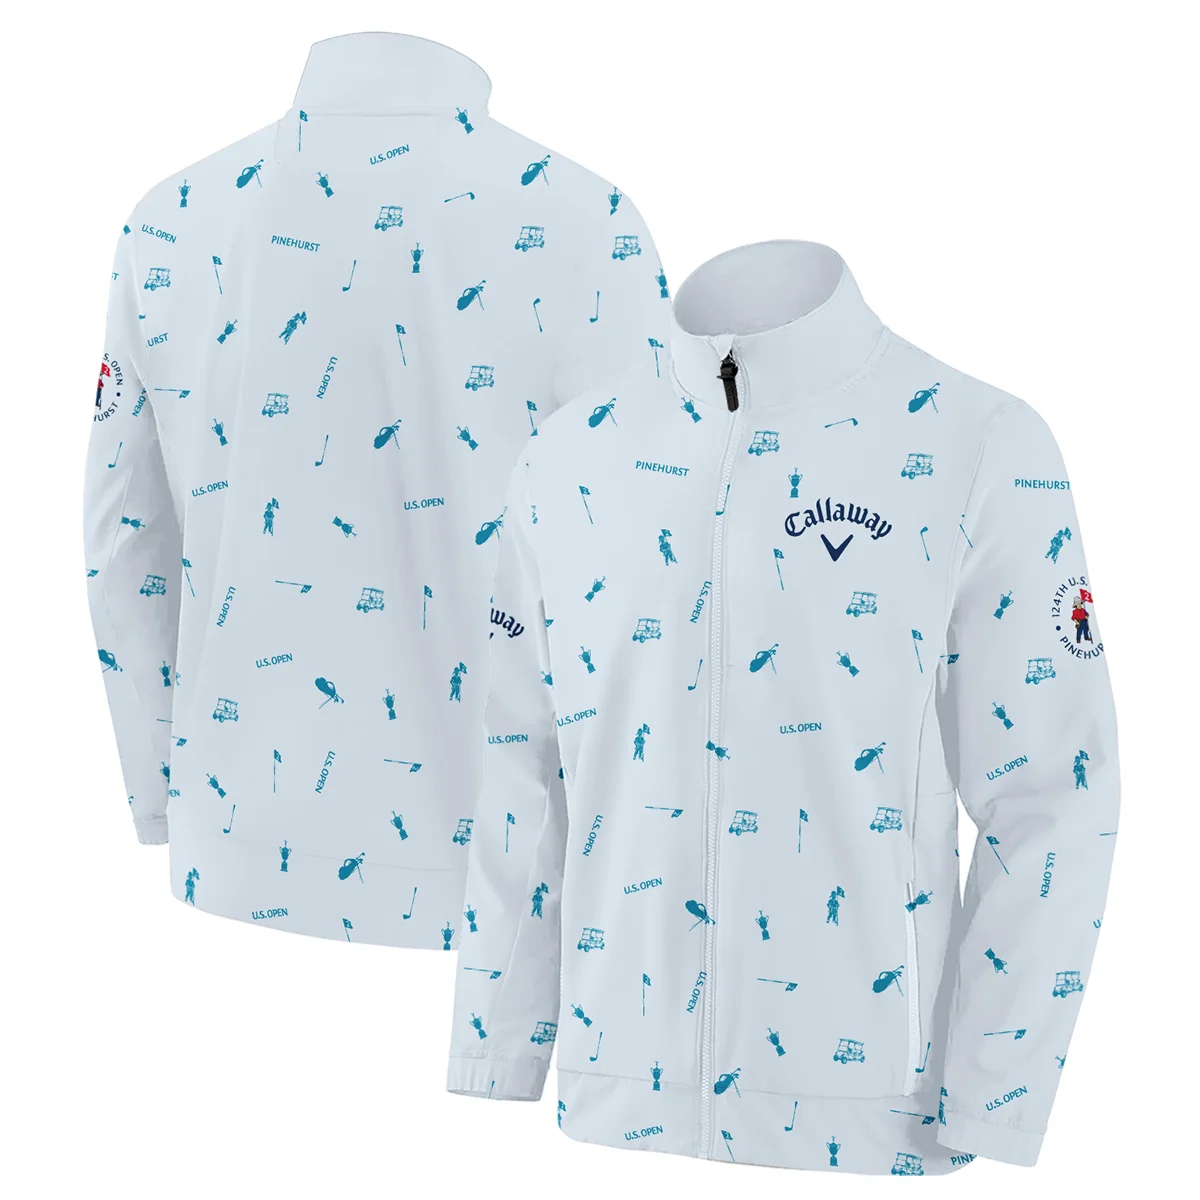 Callaway 124th U.S. Open Pinehurst Zipper Polo Shirt Light Blue Pastel Golf Pattern All Over Print Zipper Polo Shirt For Men